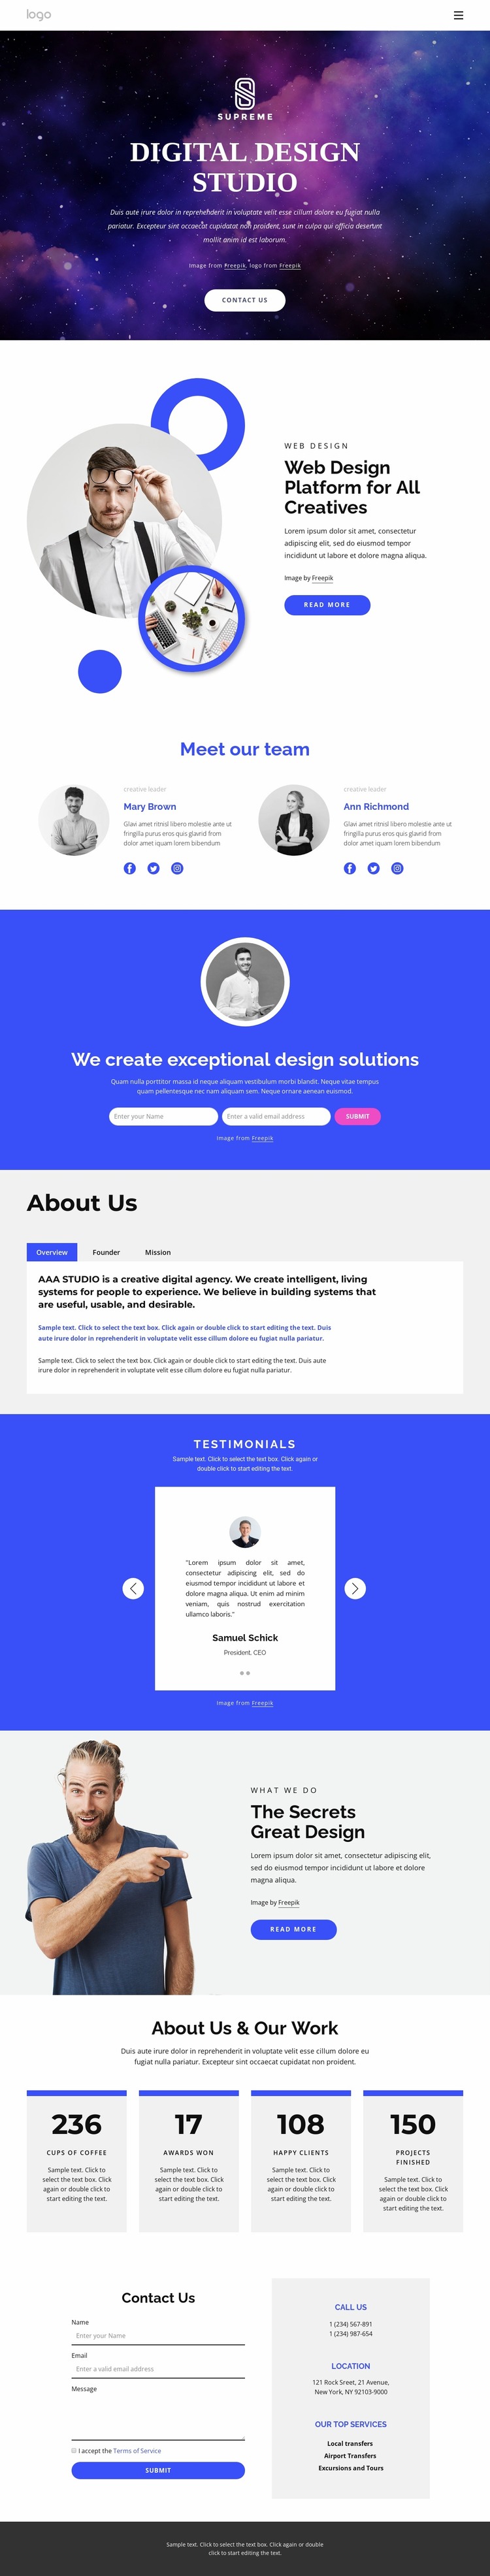 Digital design agency Website Mockup